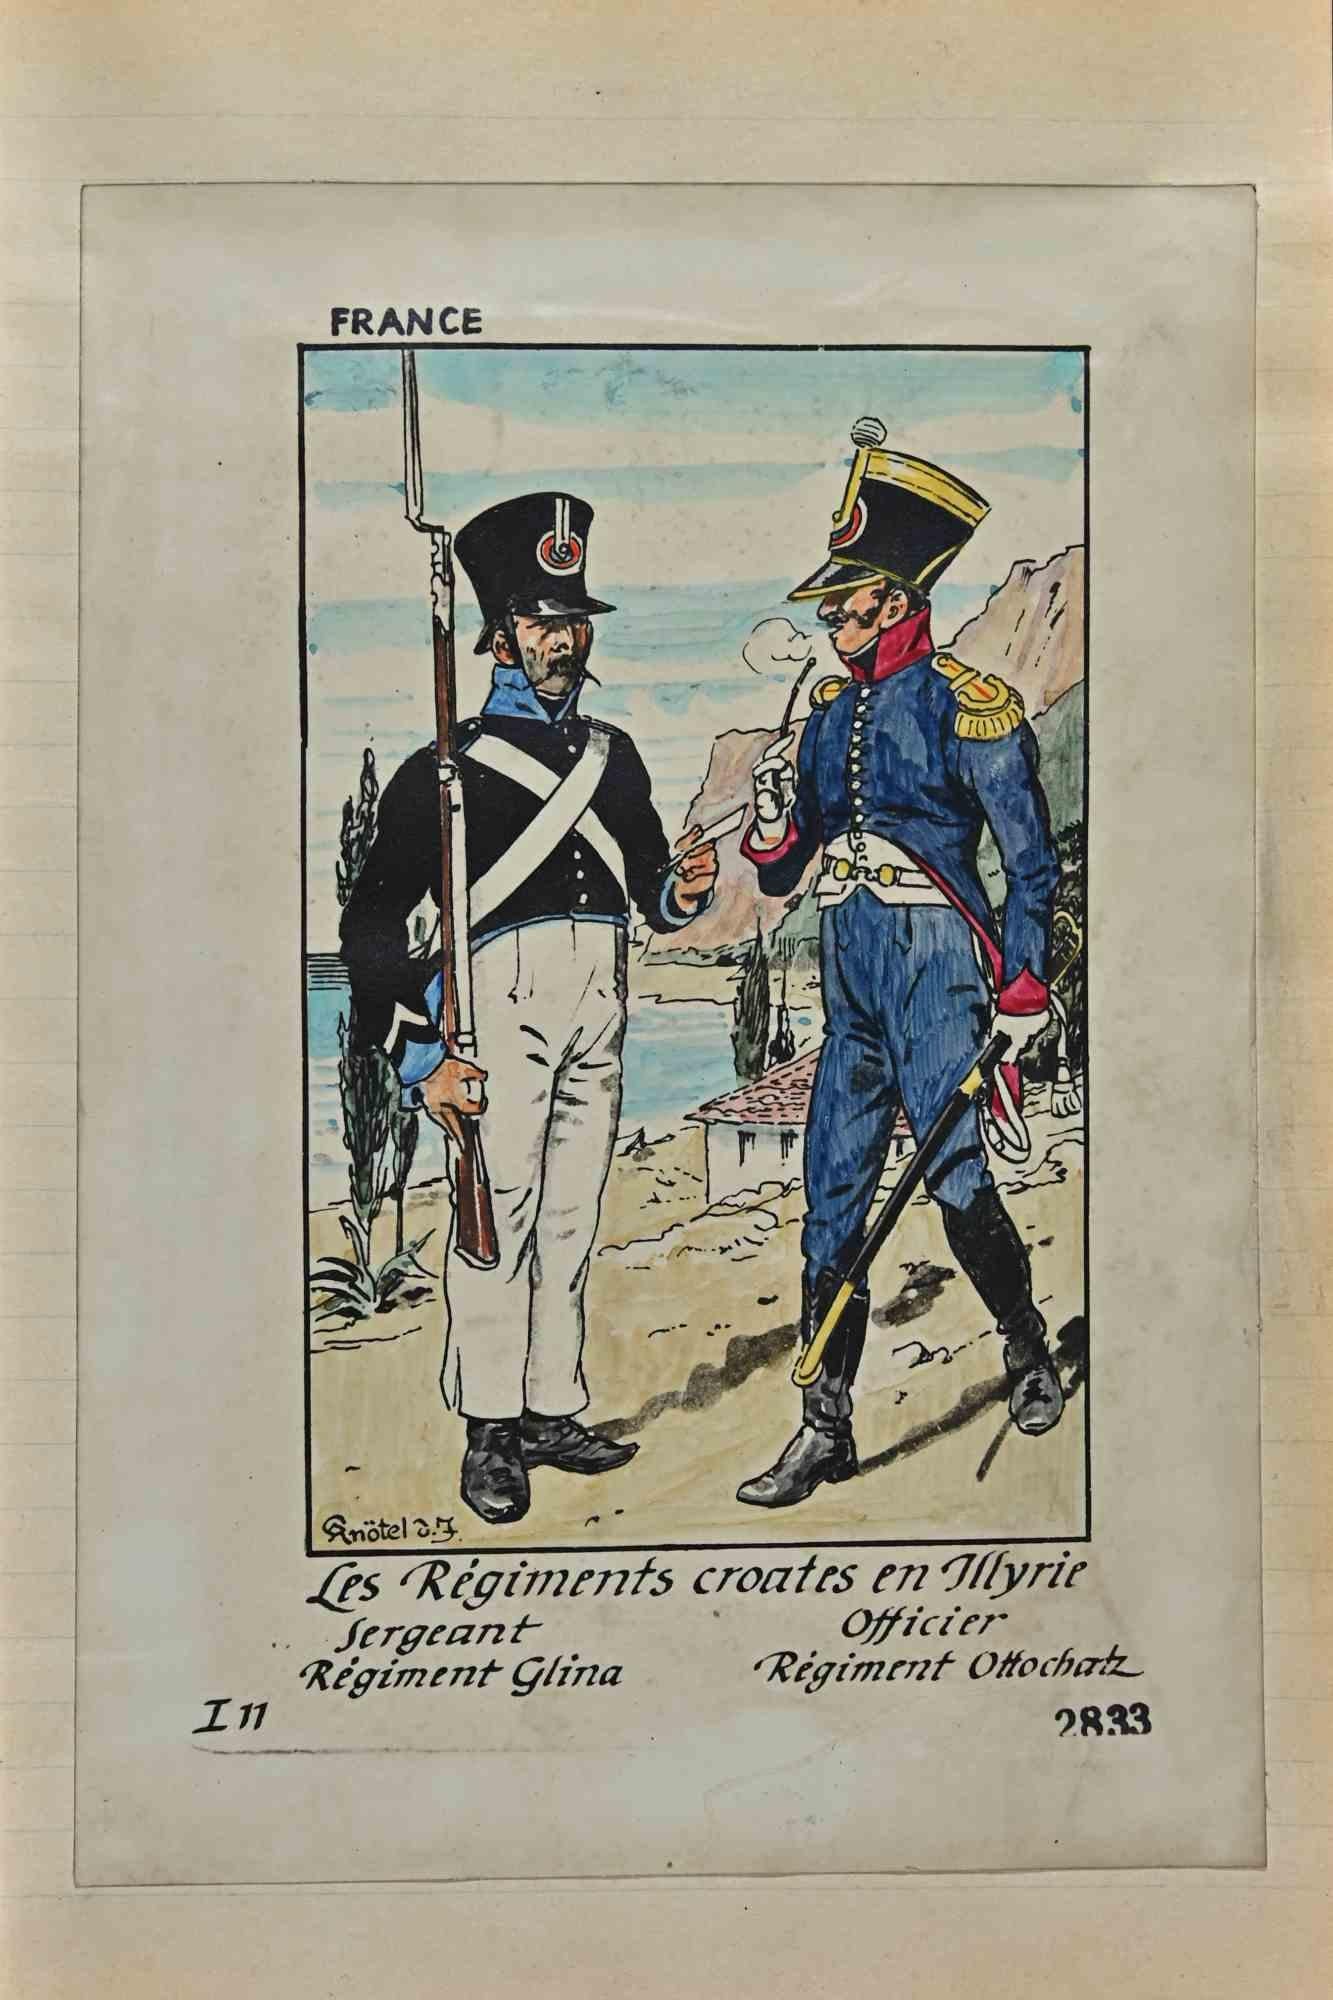 Les Regiments Croates en Illyrie ist eine Originalzeichnung in Tusche und Aquarell von Herbert Knotel aus den 1930/40er Jahren.

Guter Zustand, außer dass er gealtert ist.

Das Kunstwerk wird durch starke Linien in ausgewogenen Verhältnissen